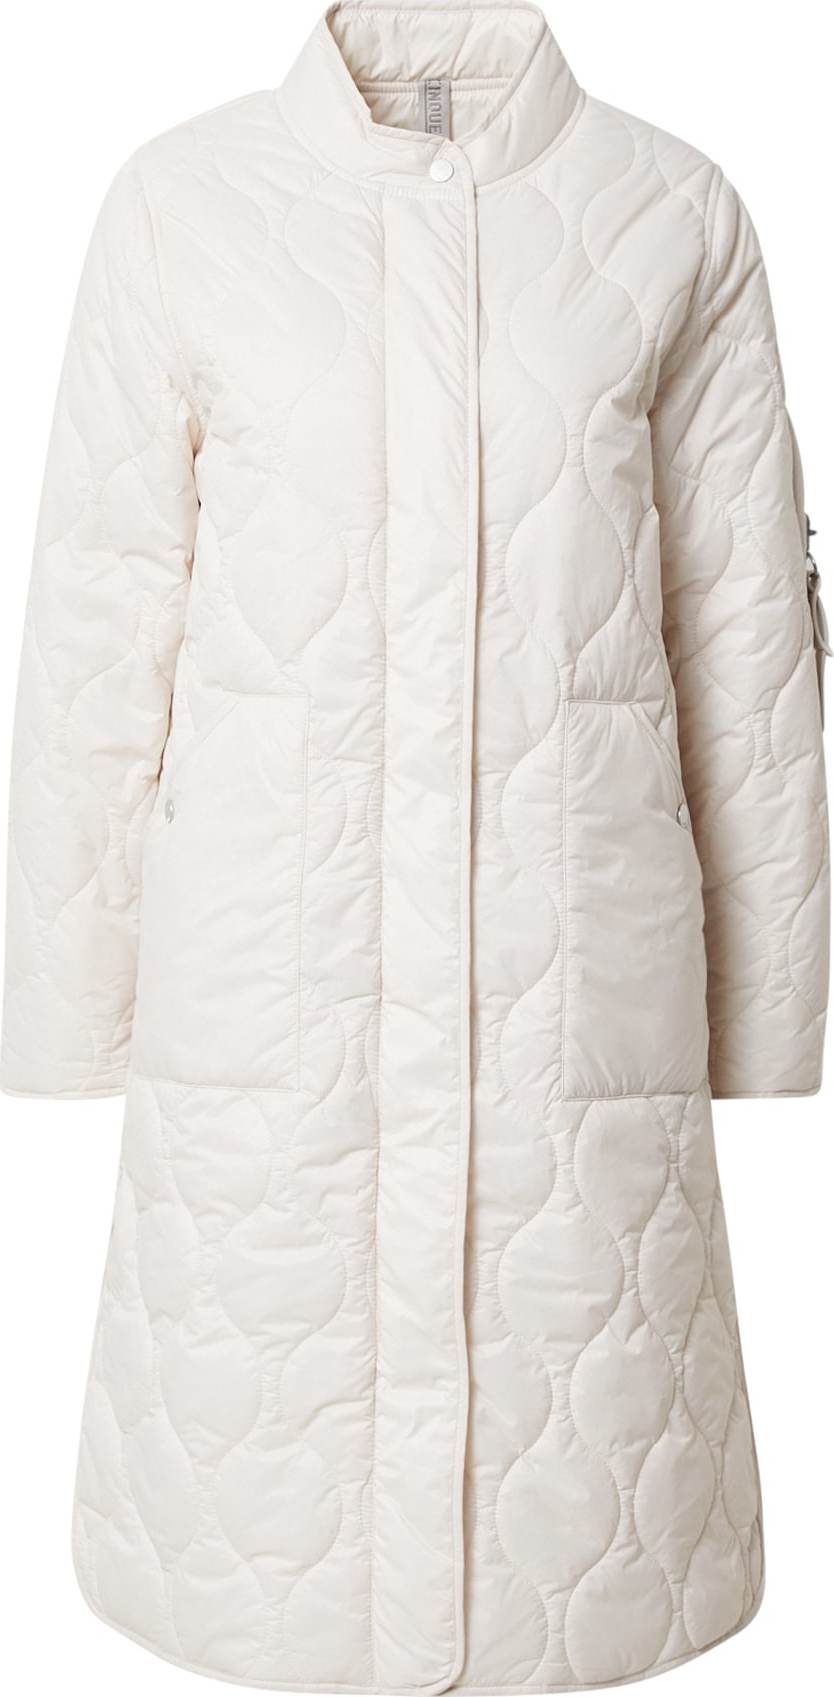 CINQUE Přechodný kabát přírodní bílá